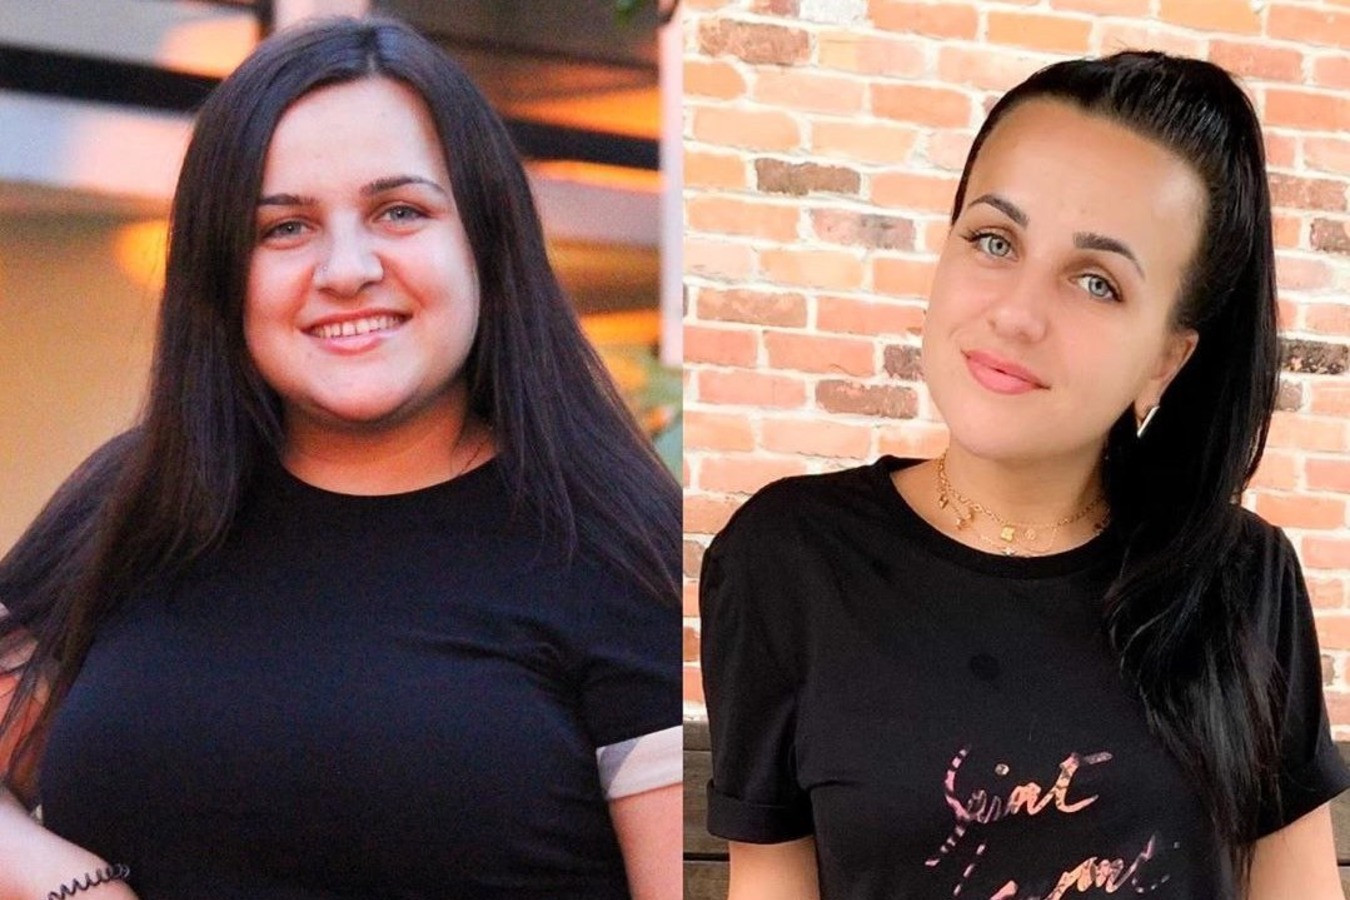 Похудение До И После Фото Женщины